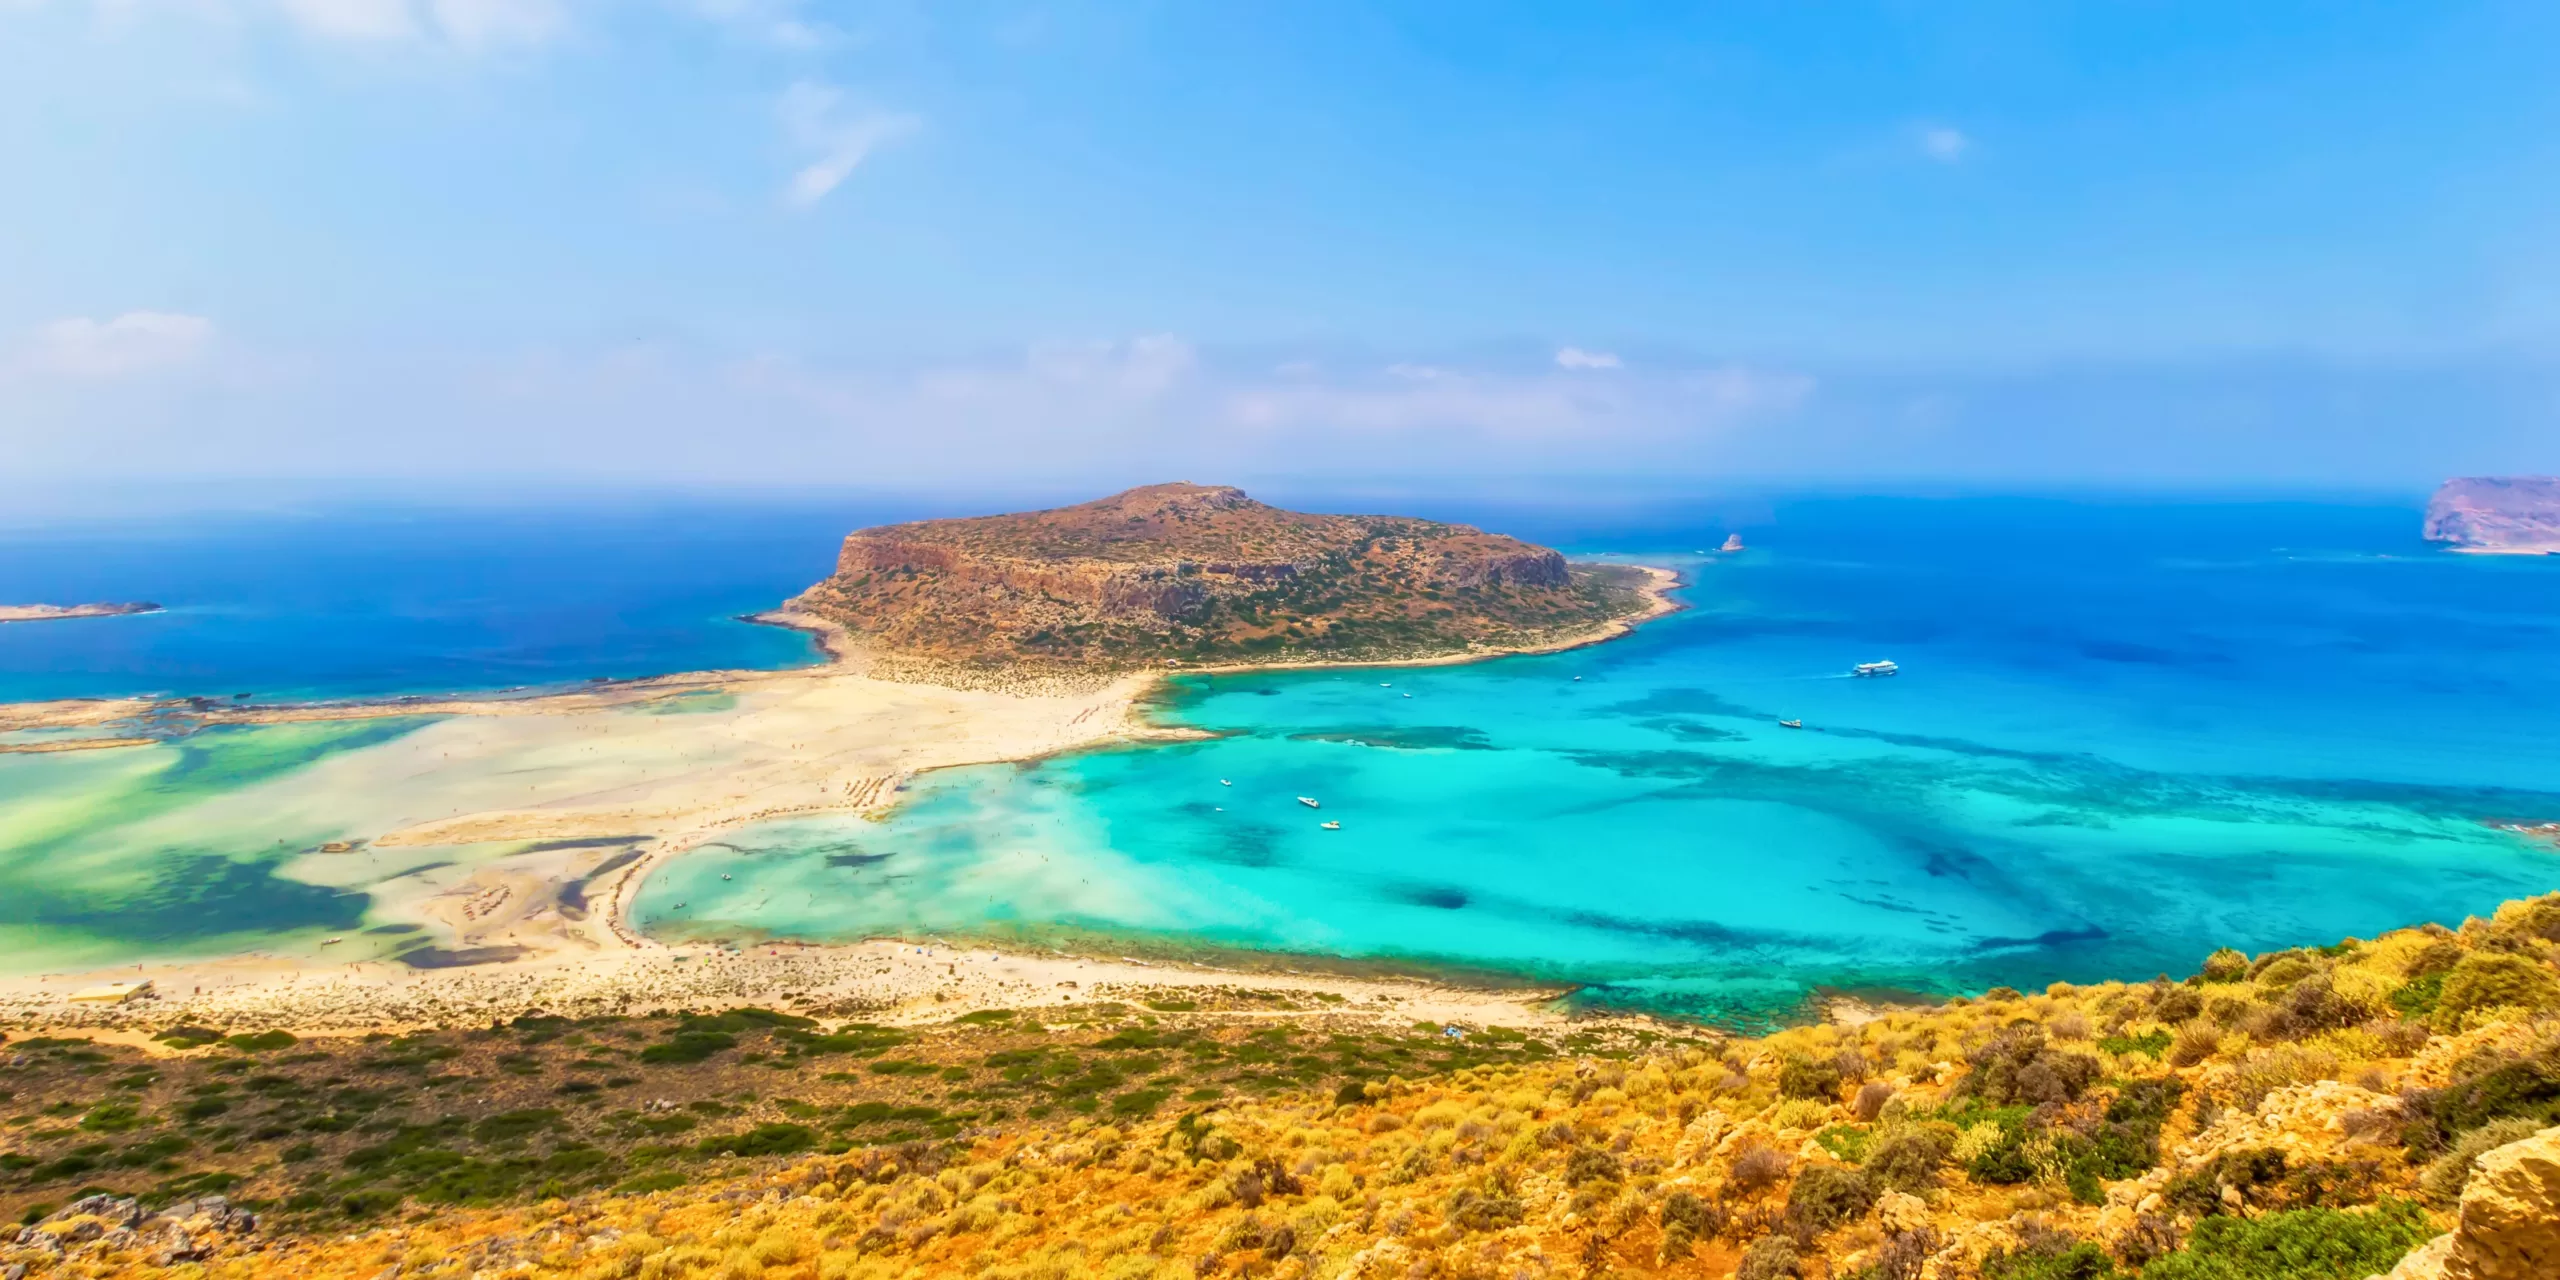 L'île de Balos, un incontournable à voir en Crète